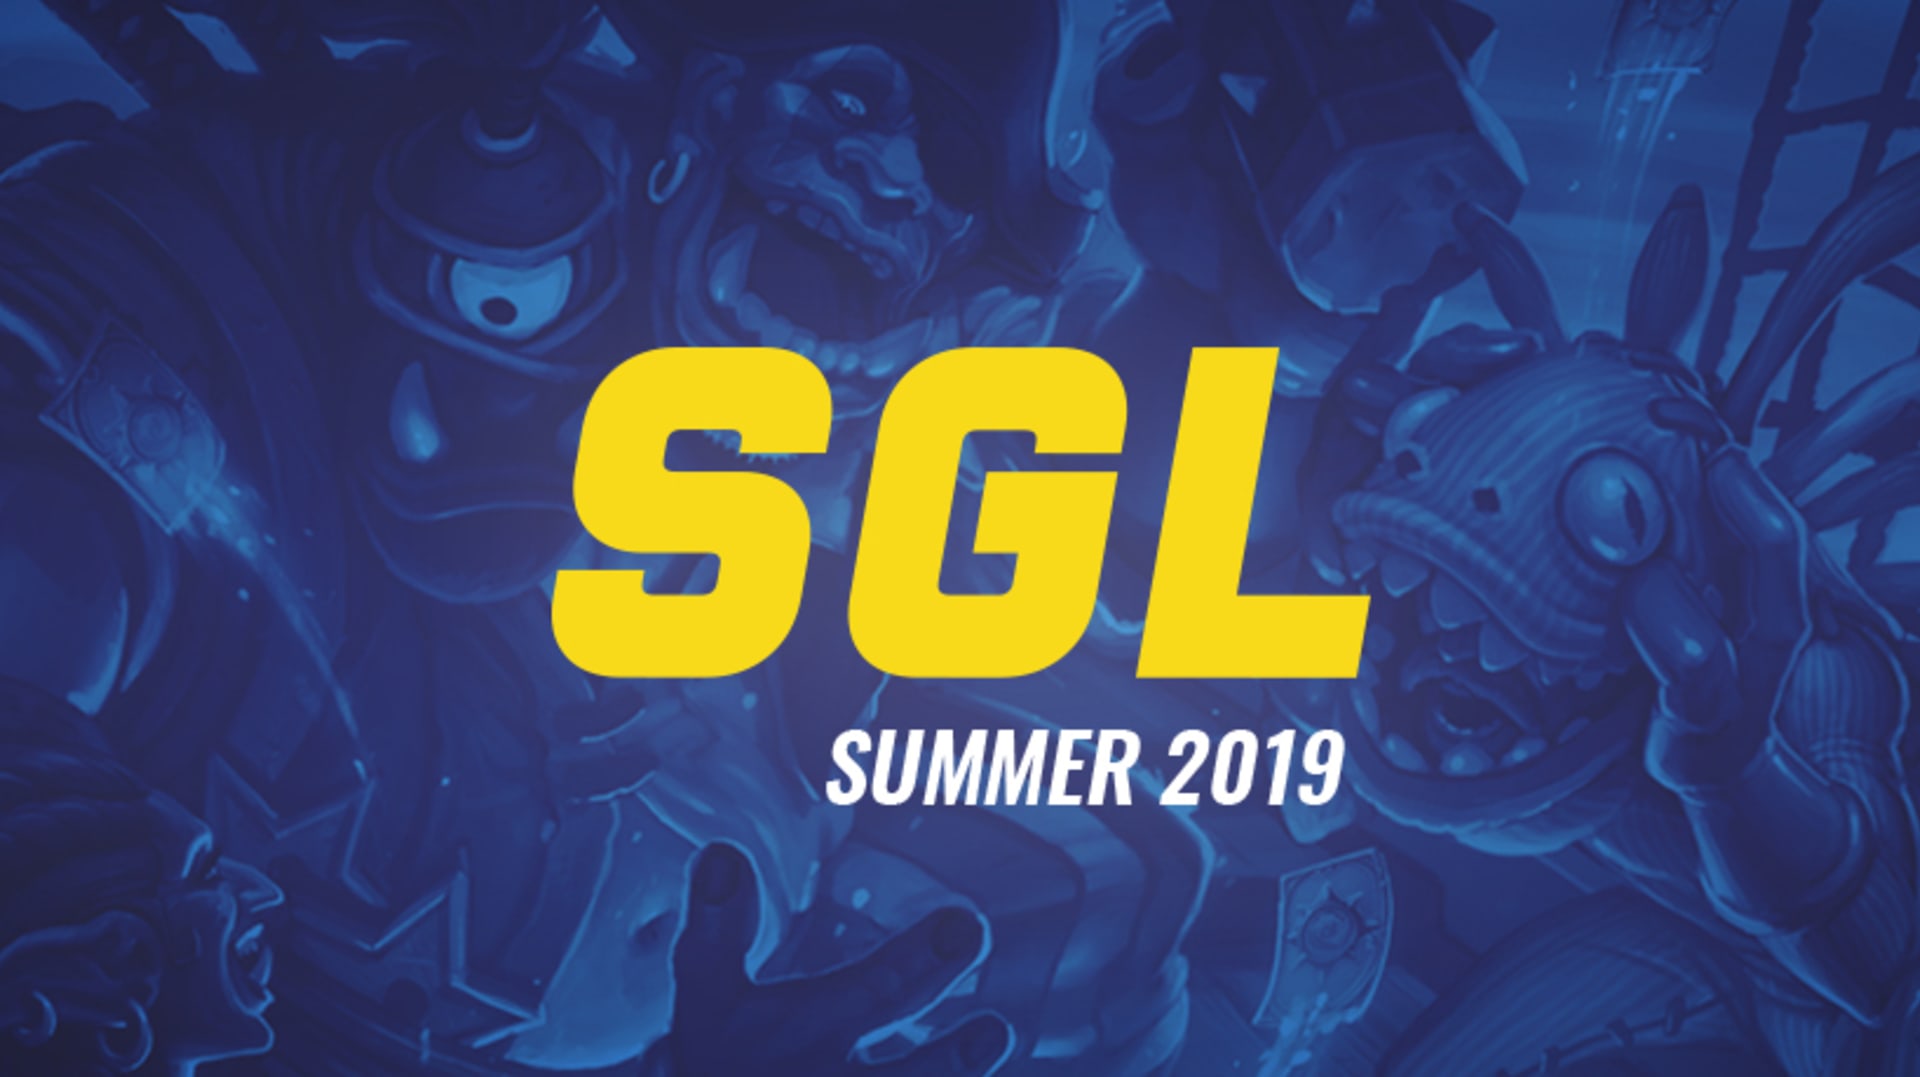 SGL Summer 2019